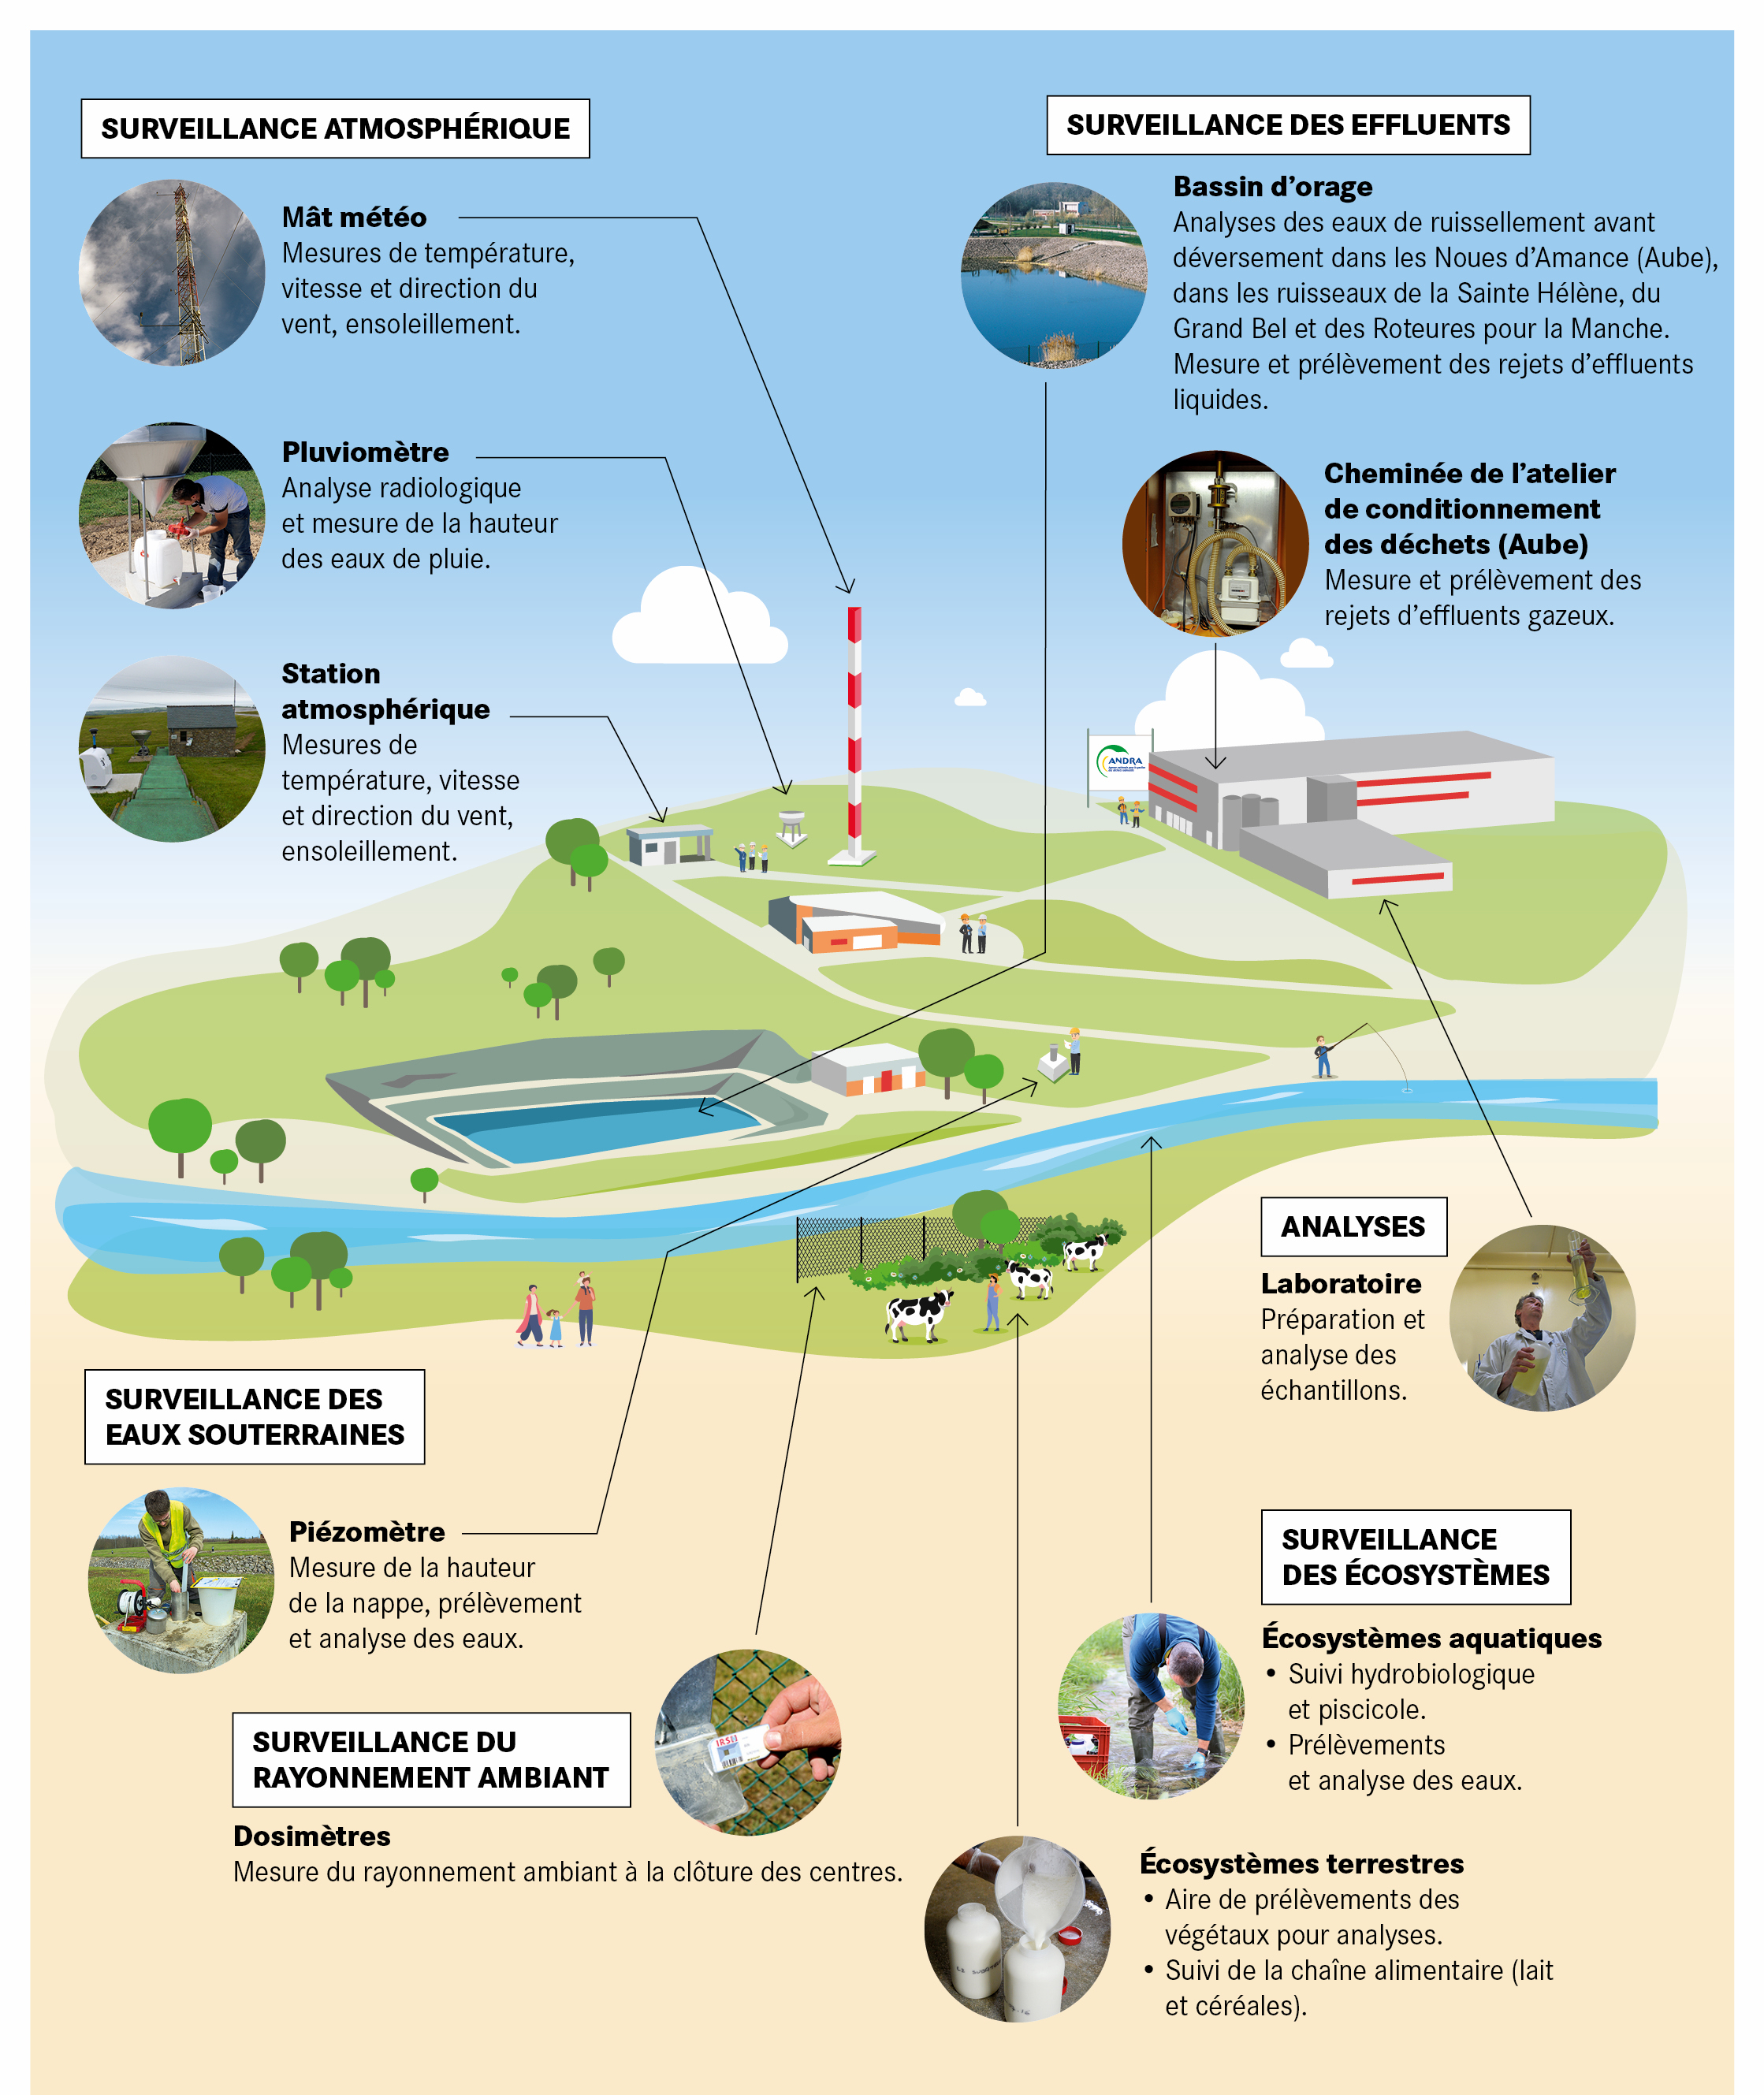 Infographie - Surveillance de l'environnement - Qu'est-ce que l'Andra surveille